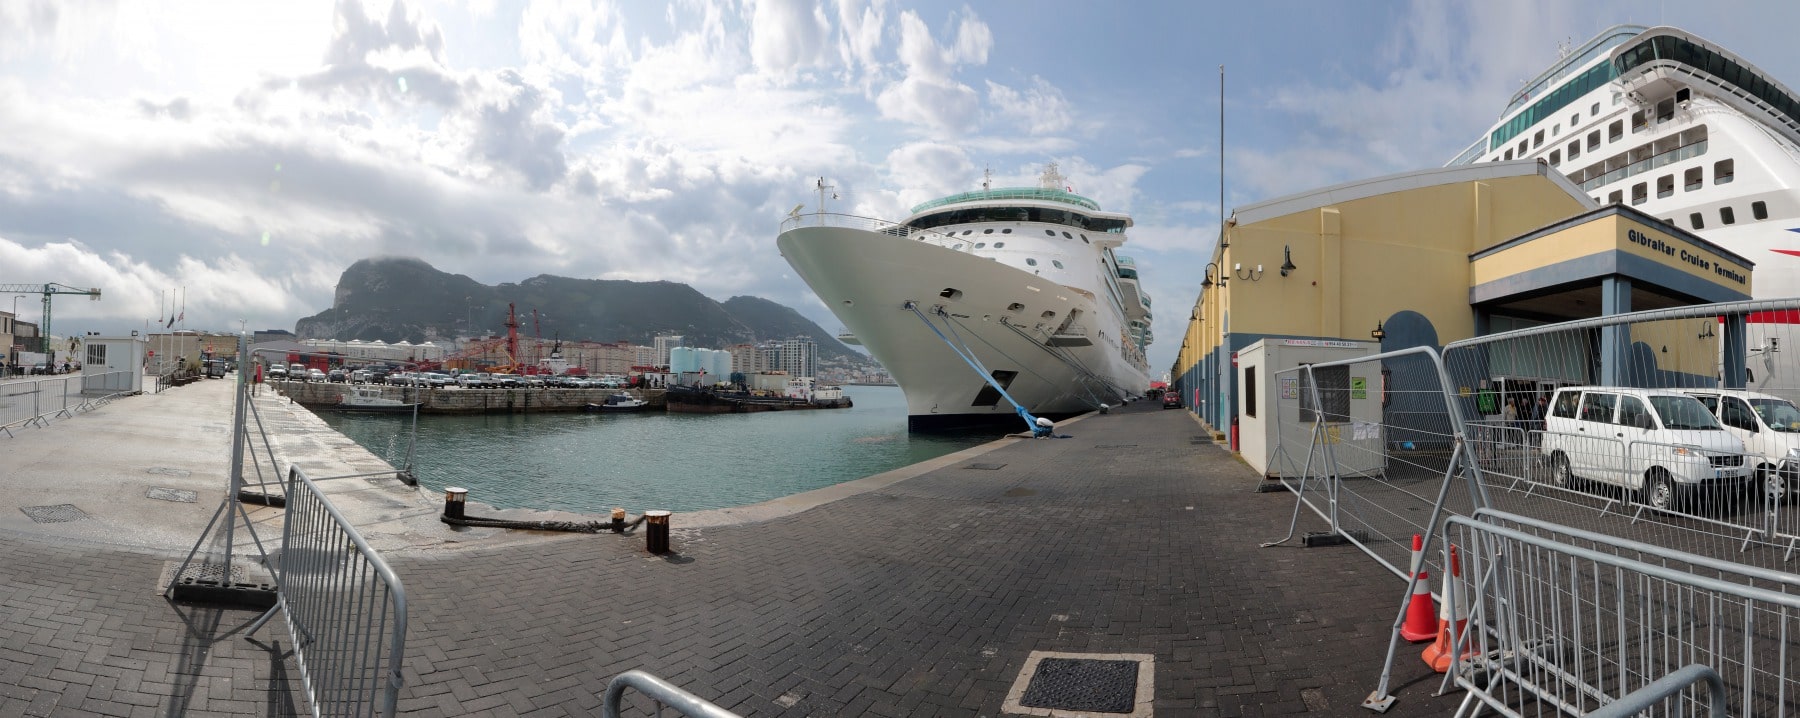 10-may-2016-visita-inaugural-crucero-jewel-of-the-seas-1_26329398764_o